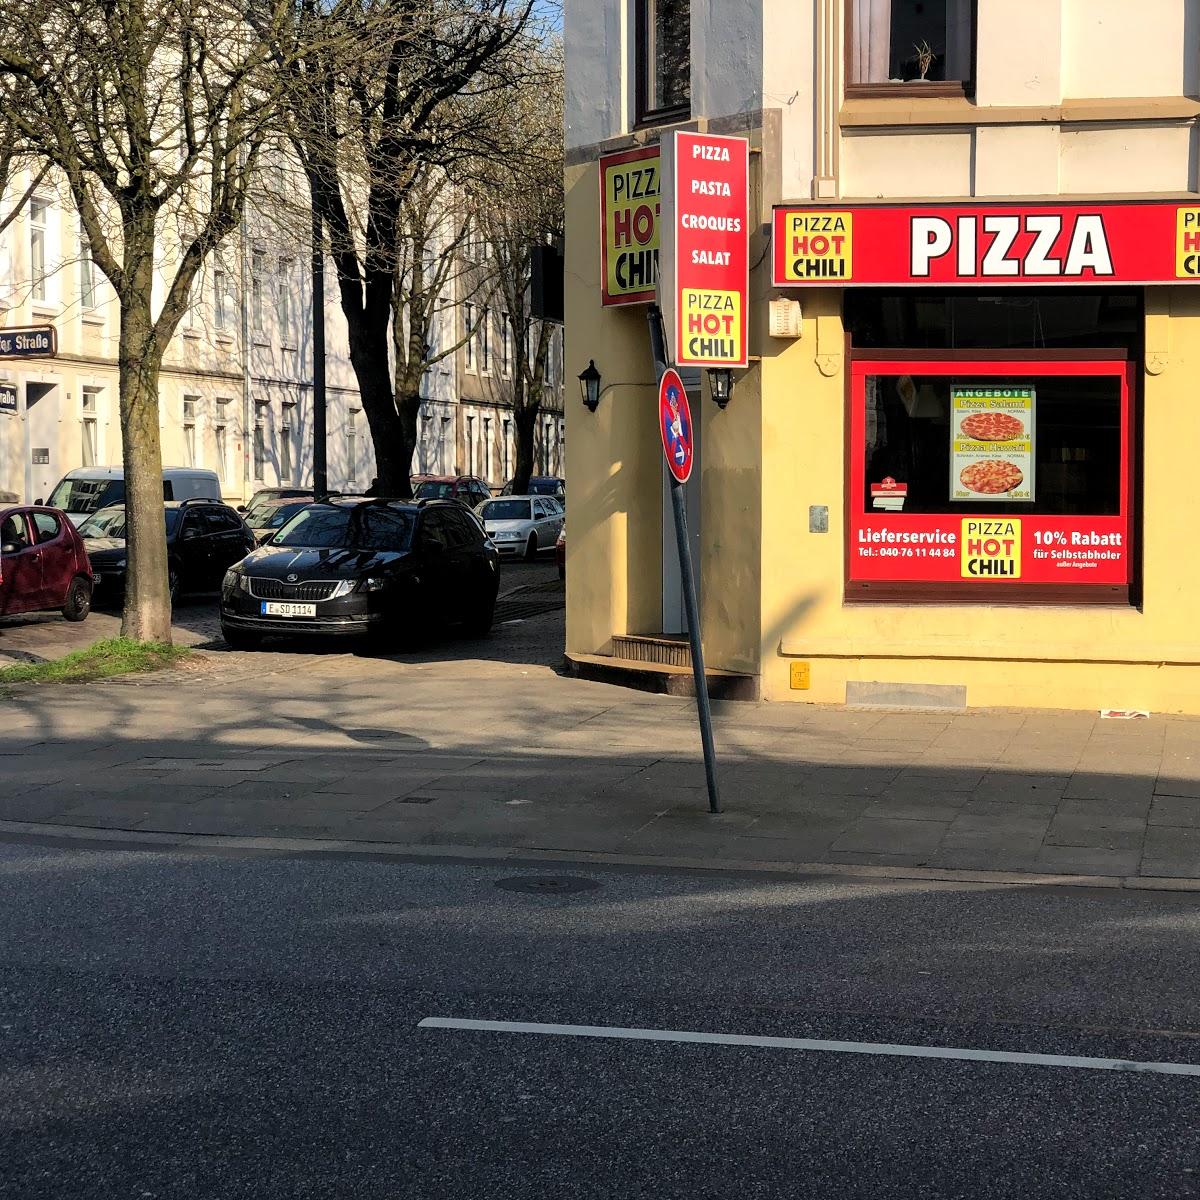 Restaurant "Pizza Hot Chili" in Hamburg